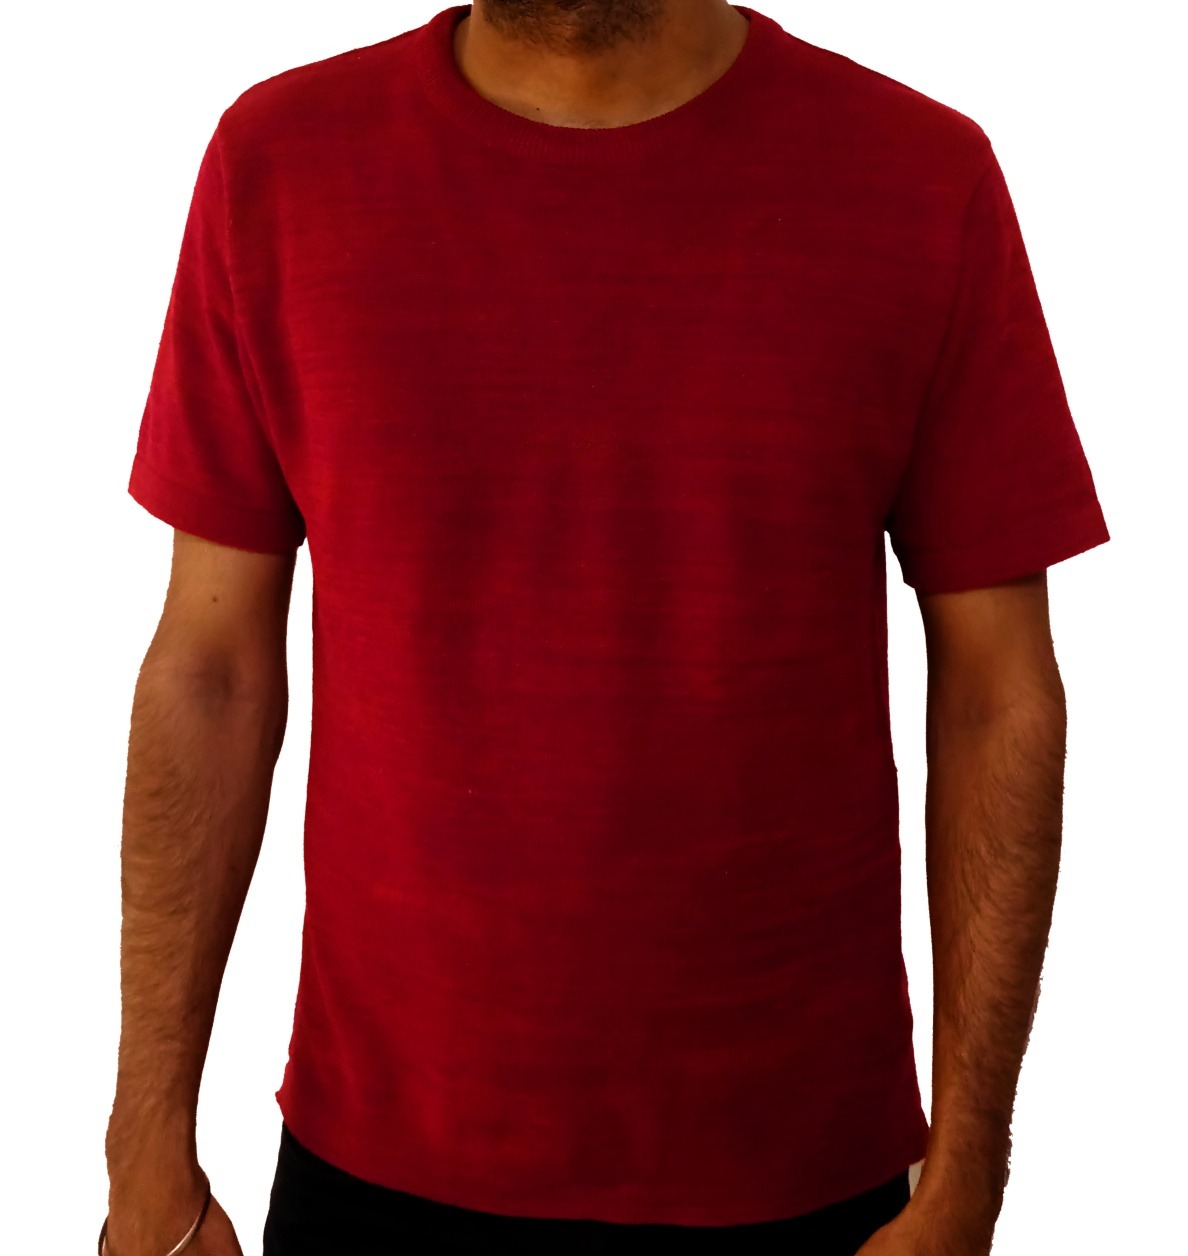 dark red t shirt